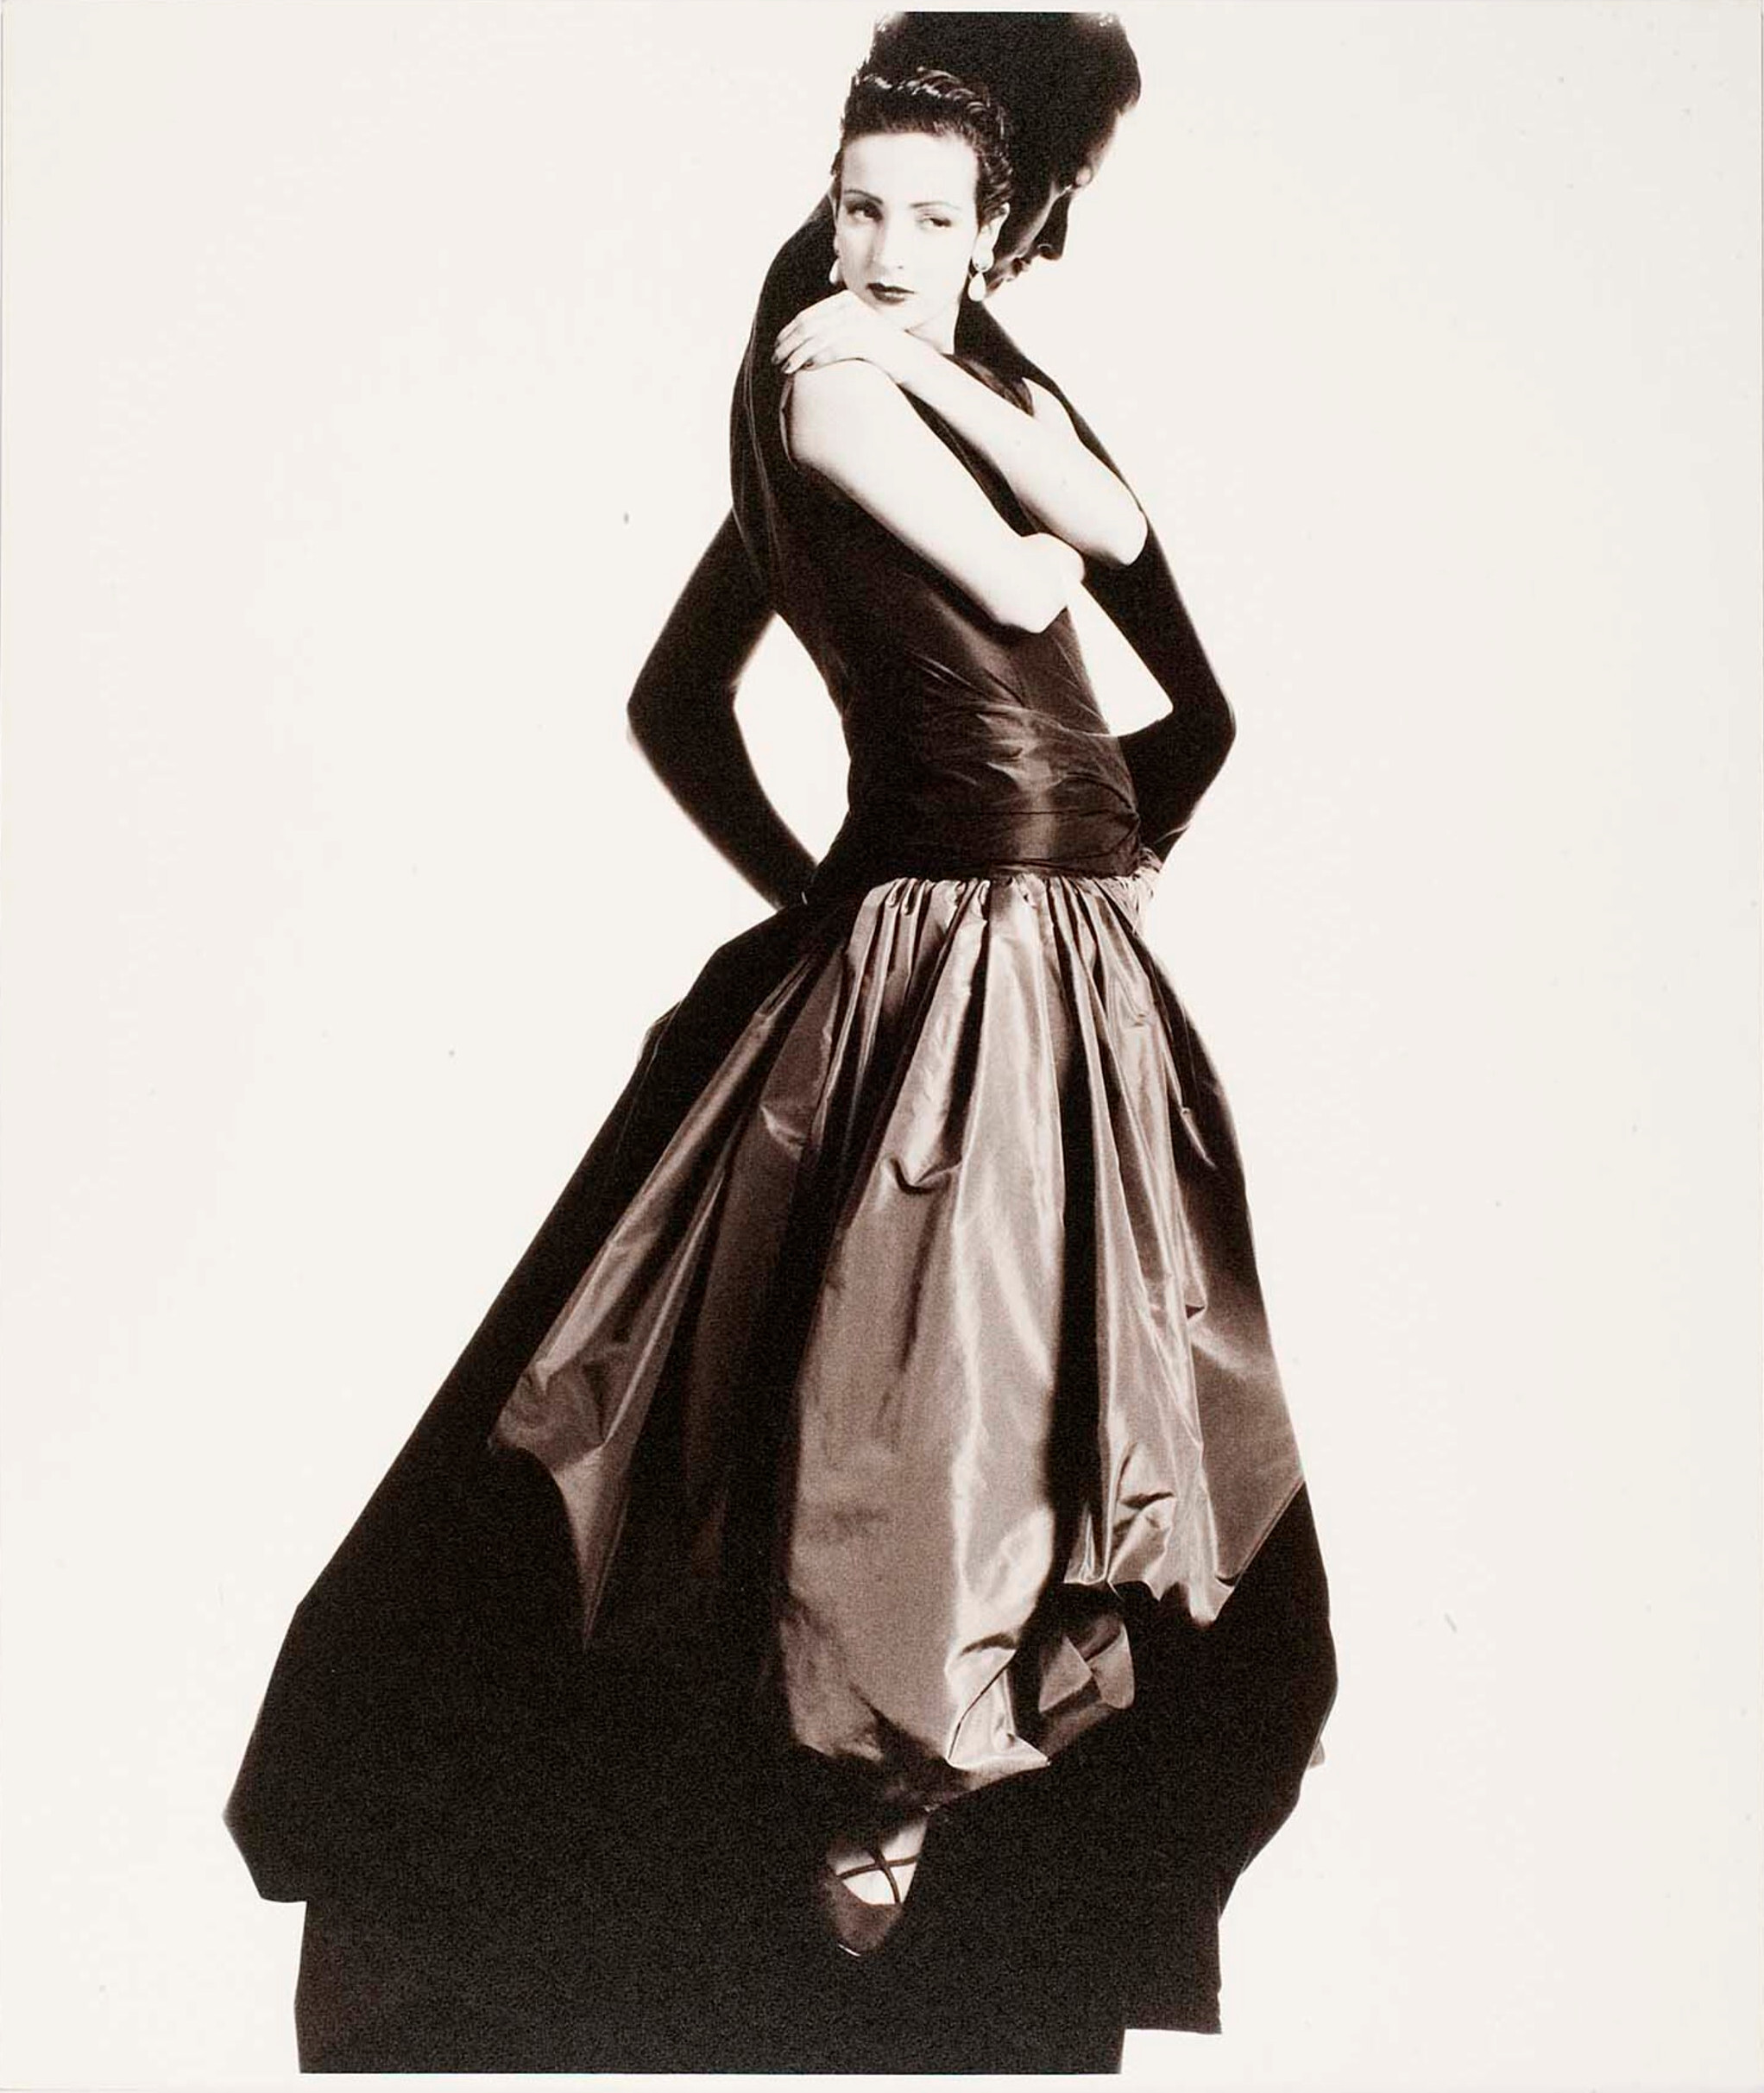 Бетти Лаго, мадам. Гресь, 1985 г. Фотограф Дэвид Сайднер